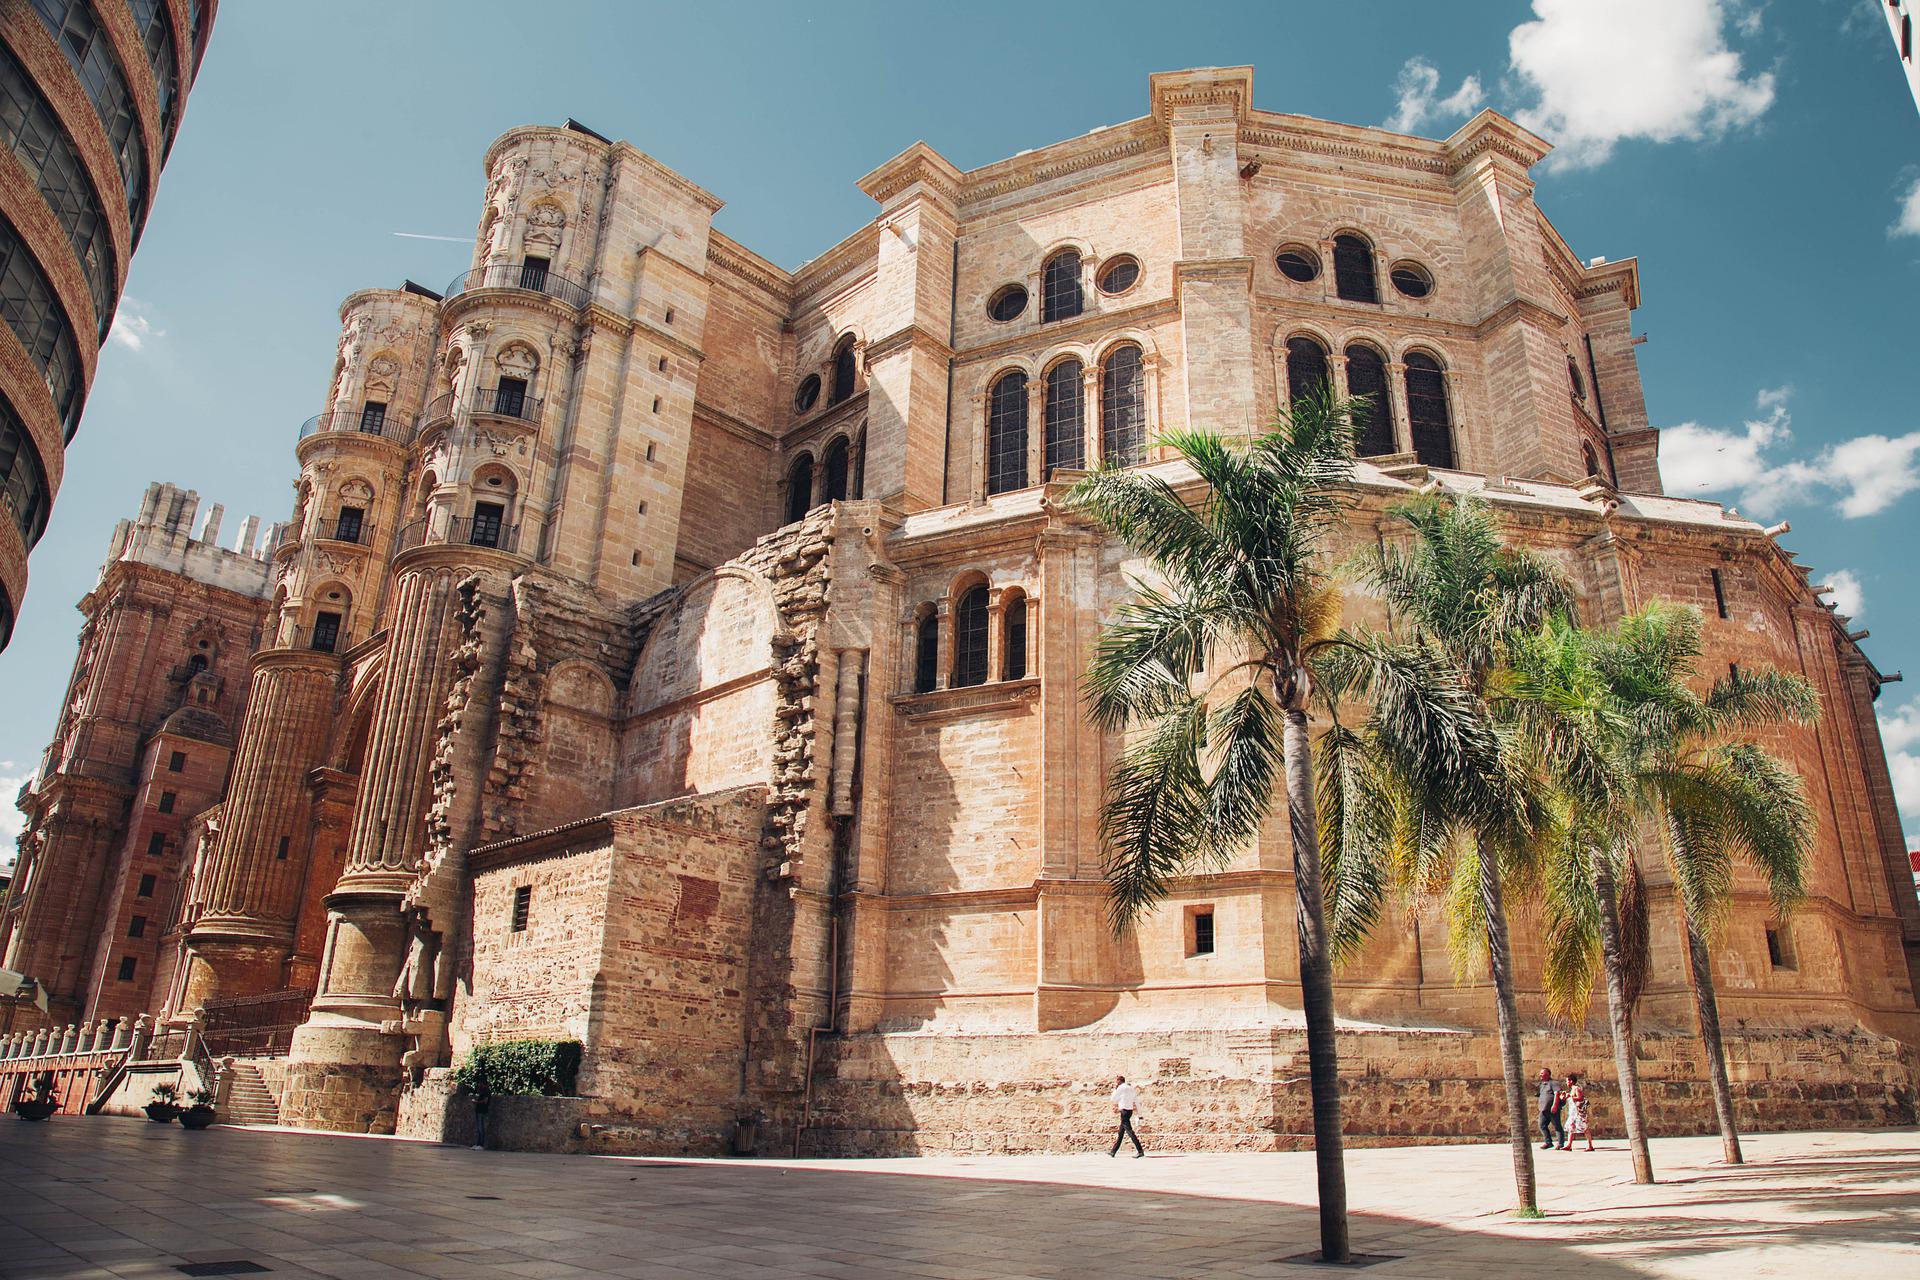 Málaga distribuirá en los alojamientos expositores con información turística digitalizada